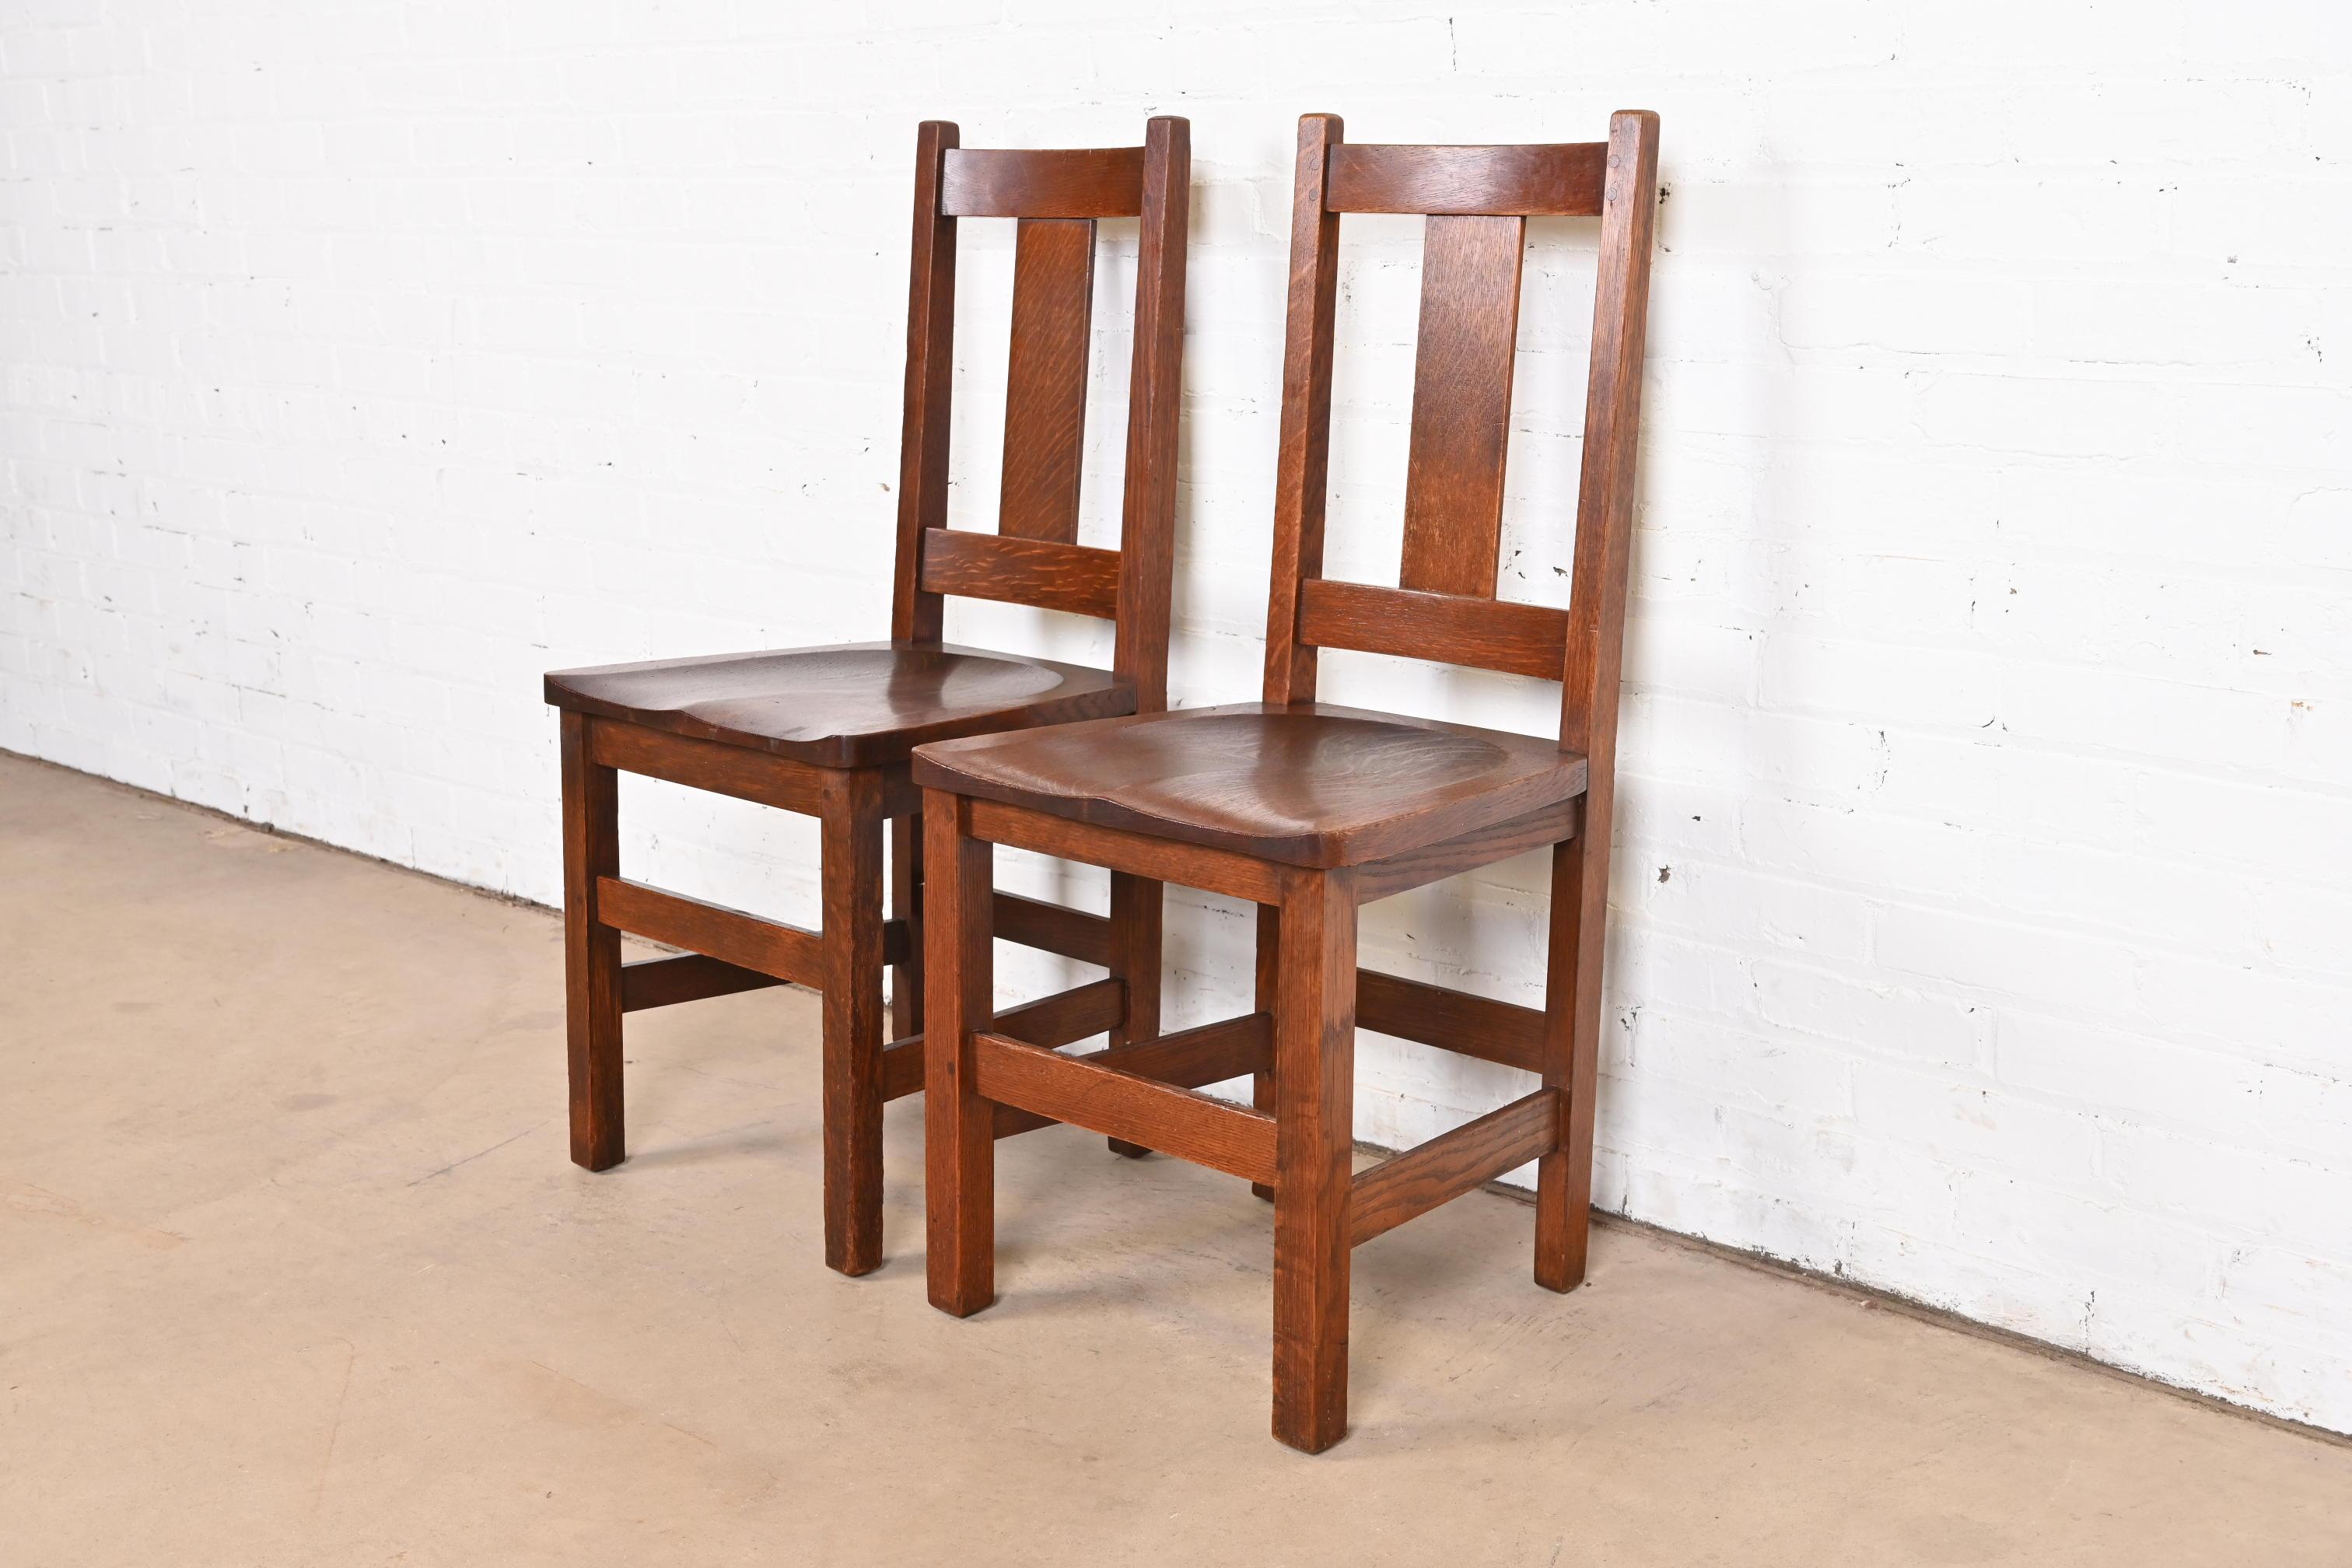 Une belle paire de chaises d'appoint ou de chaises de salle à manger en chêne massif scié en quartier, de style Mission ou Arts & Crafts.

Par Limbert

USA, Circa 1900

Dimensions : 17,25 